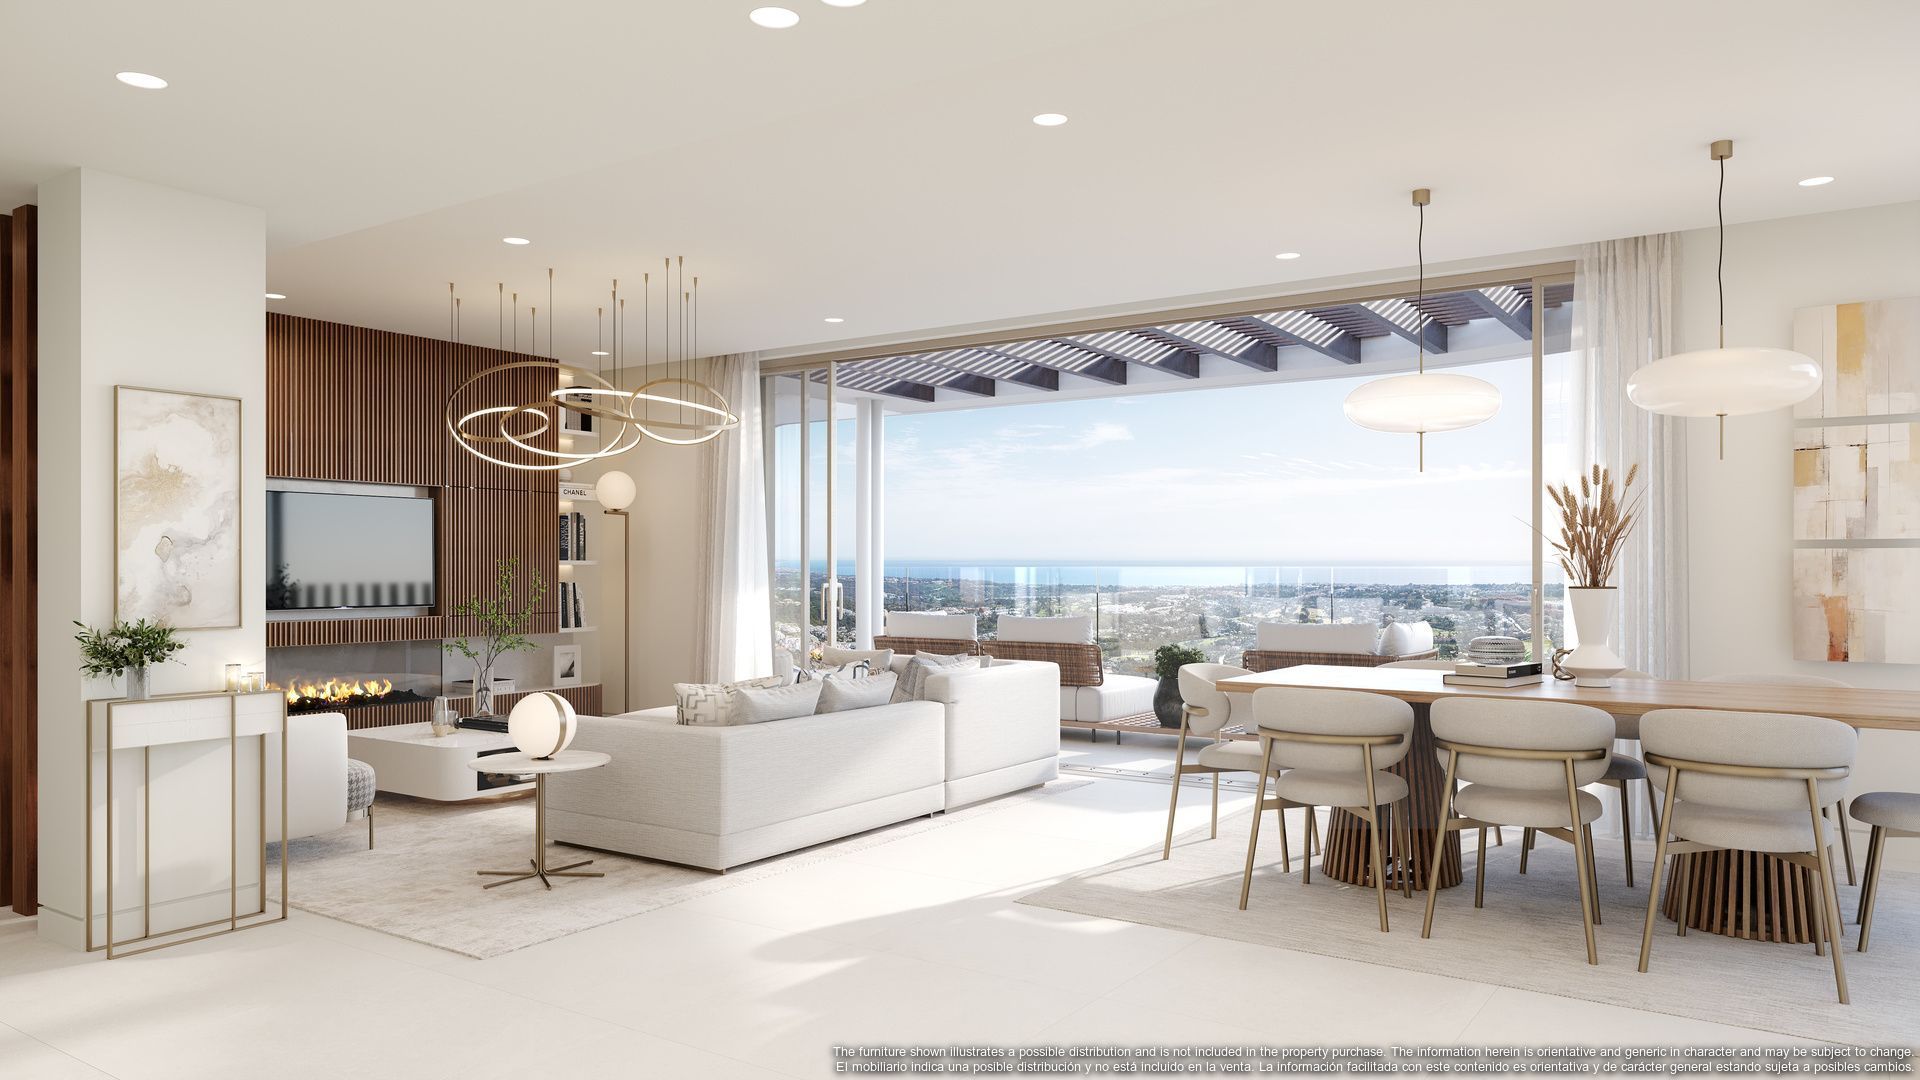 This latest development raises the bar for luxury living in Marbella, Benahavis foto-10